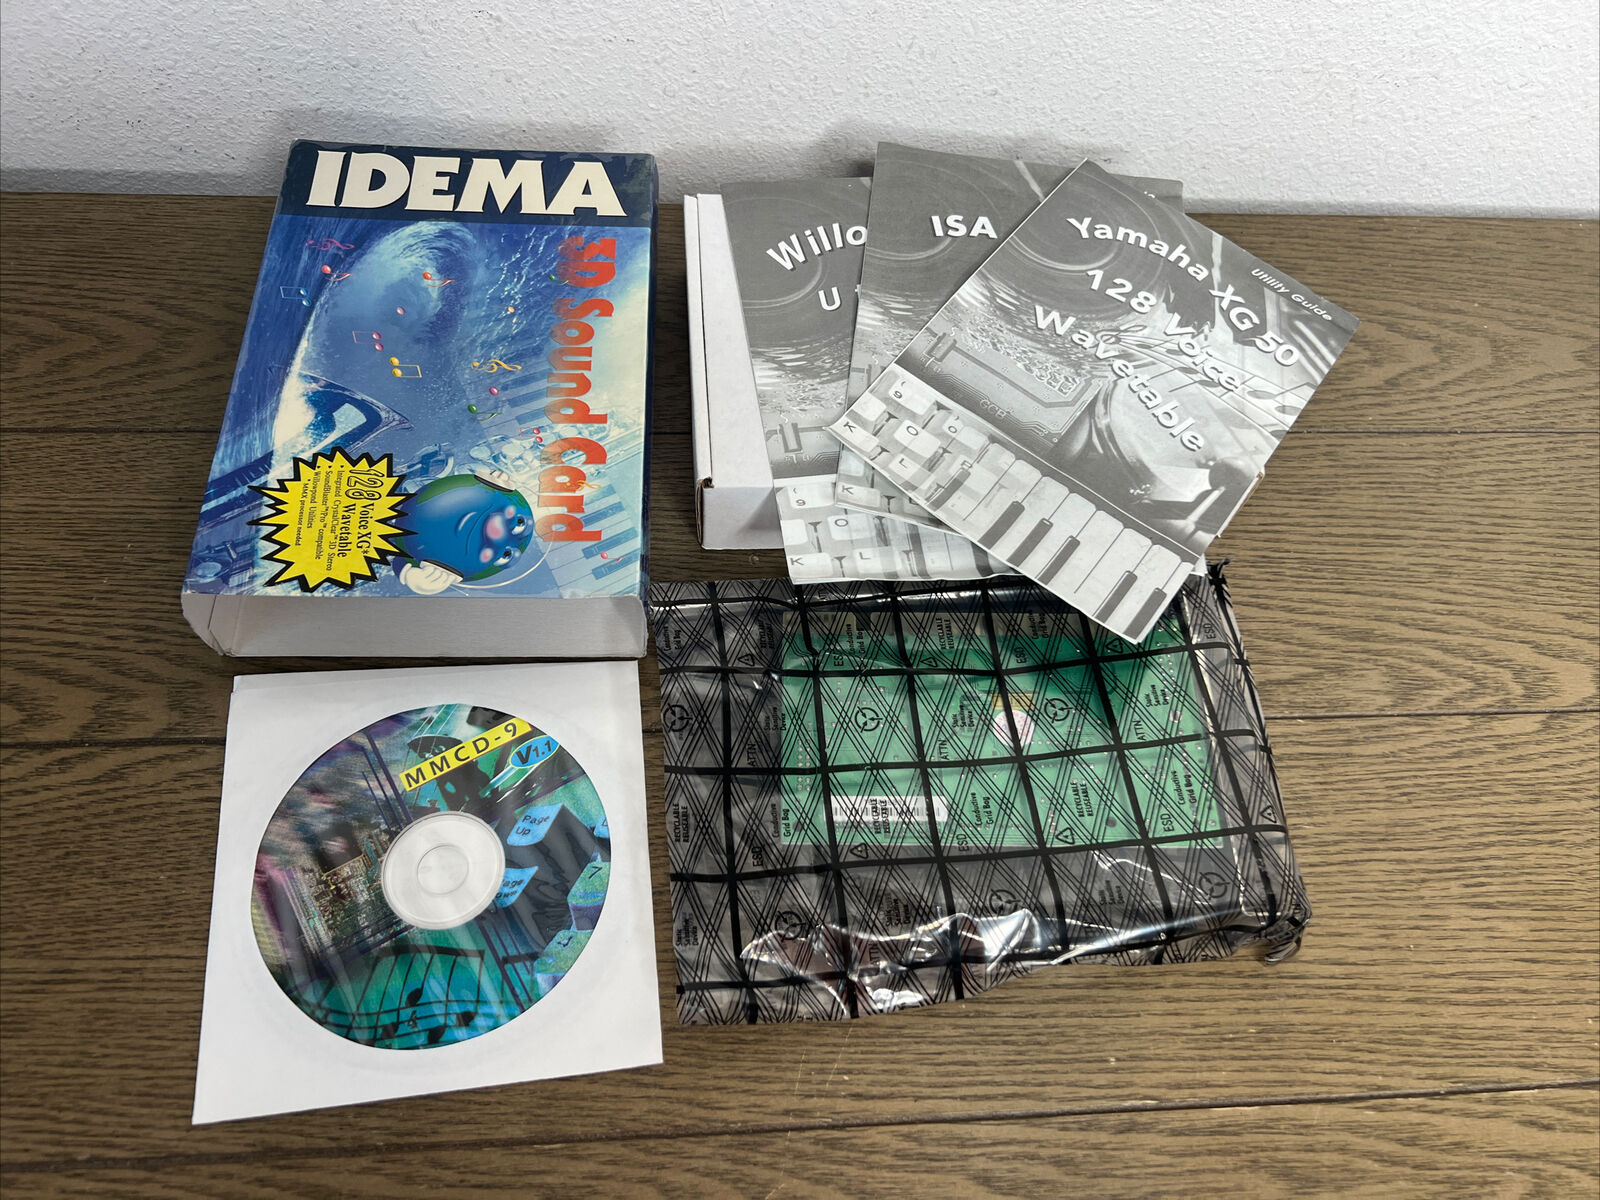 Idema 3D Sound Card PT2318 Crystal MMCD Software version 1.1